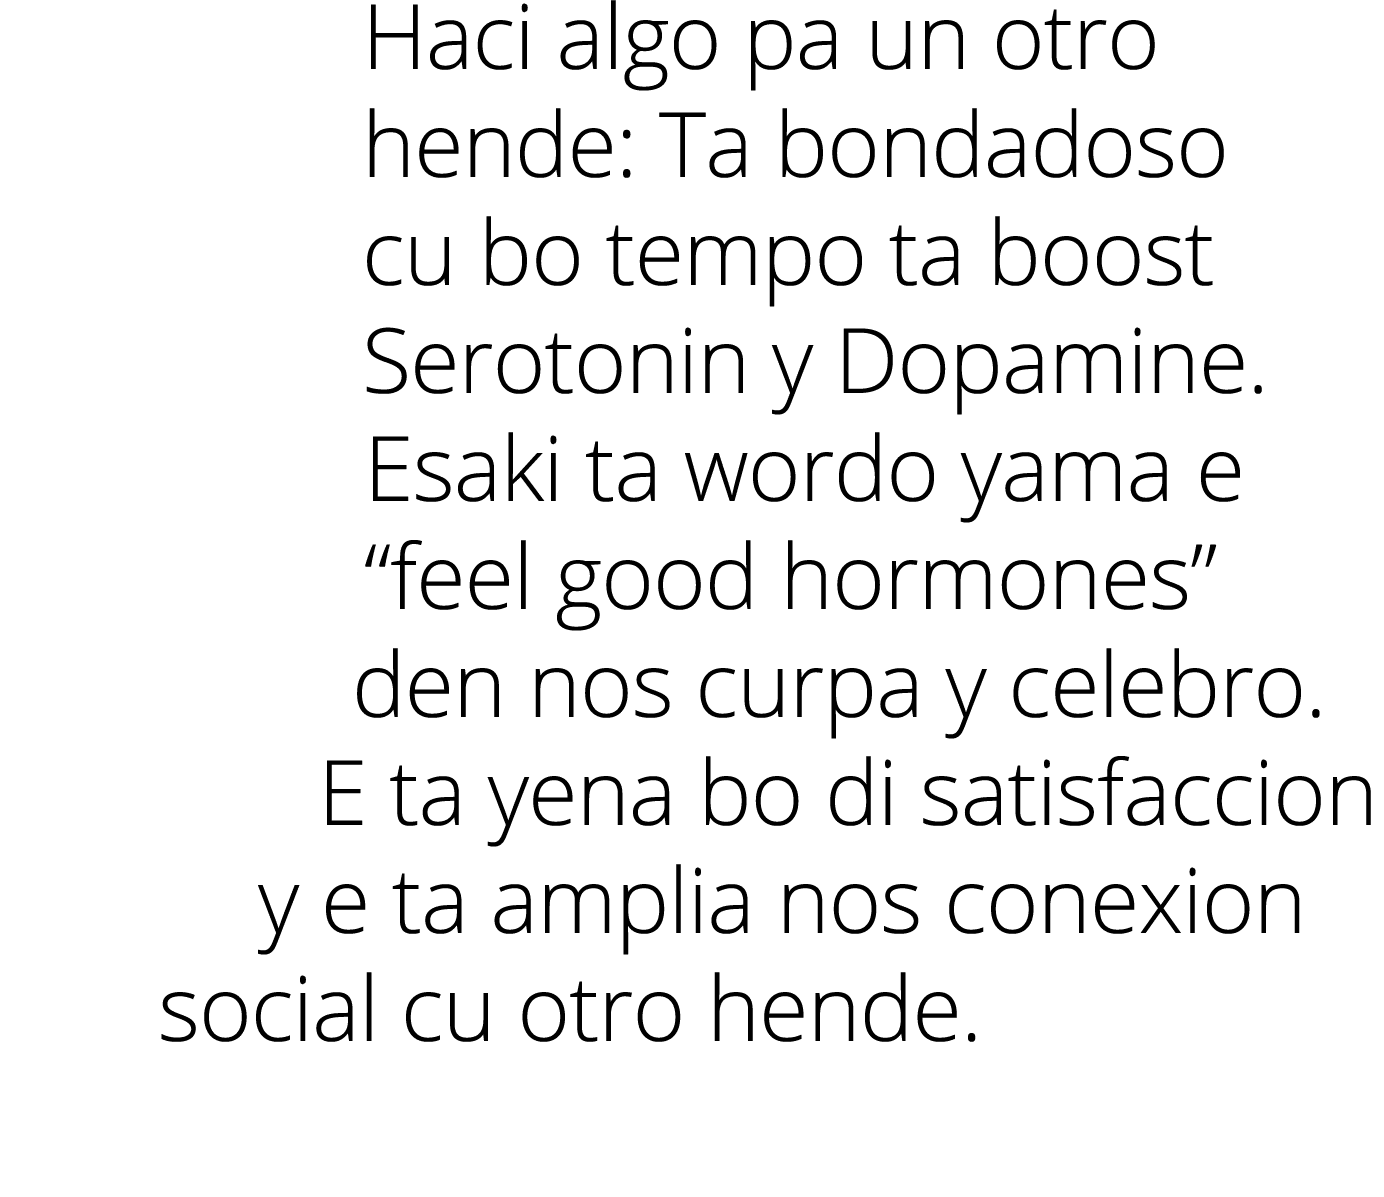 Haci algo pa un otro hende: Ta bondadoso cu bo tempo ta boost Serotonin y Dopamine. Esaki ta wordo yama e “feel good ...